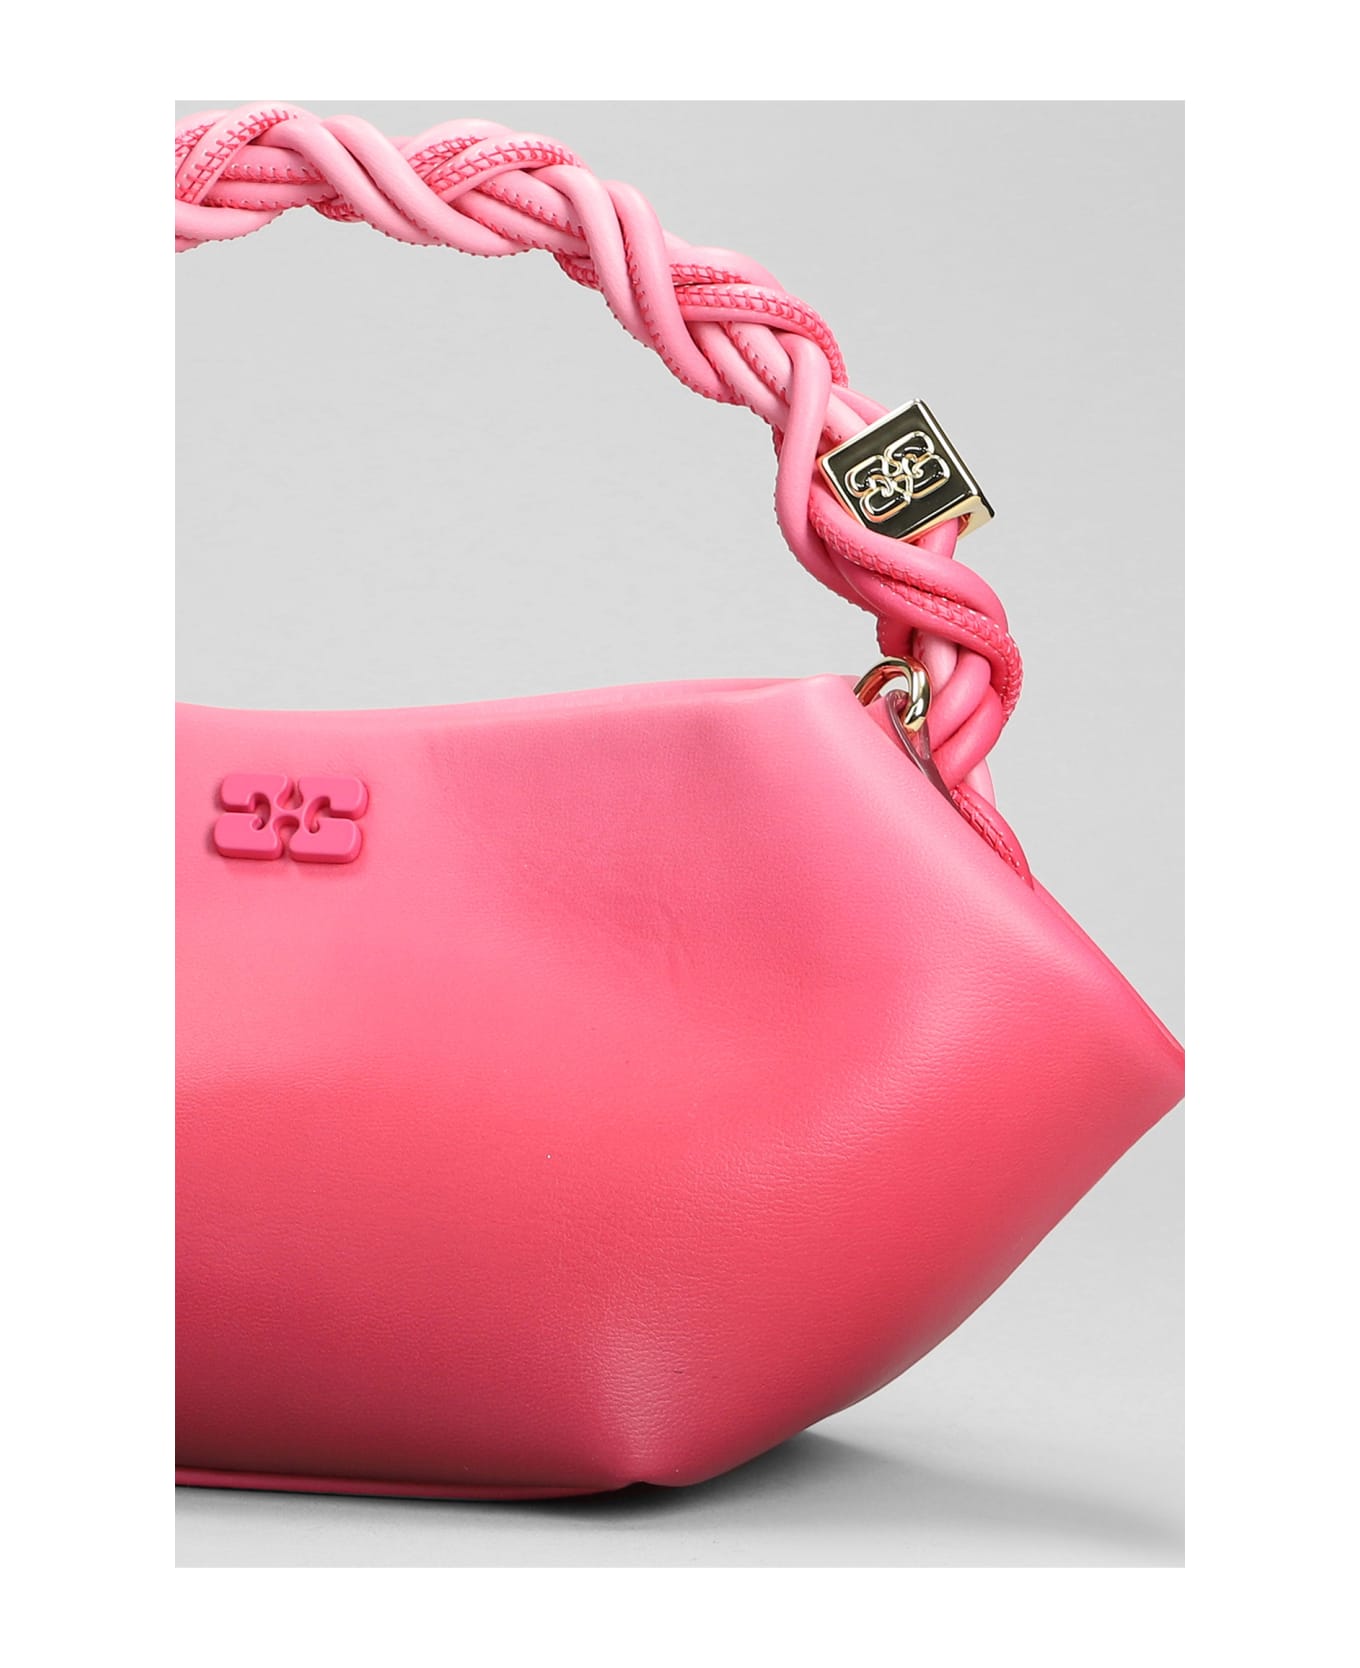 Ganni Hand Bag In Rose-pink Leather - rose-pink